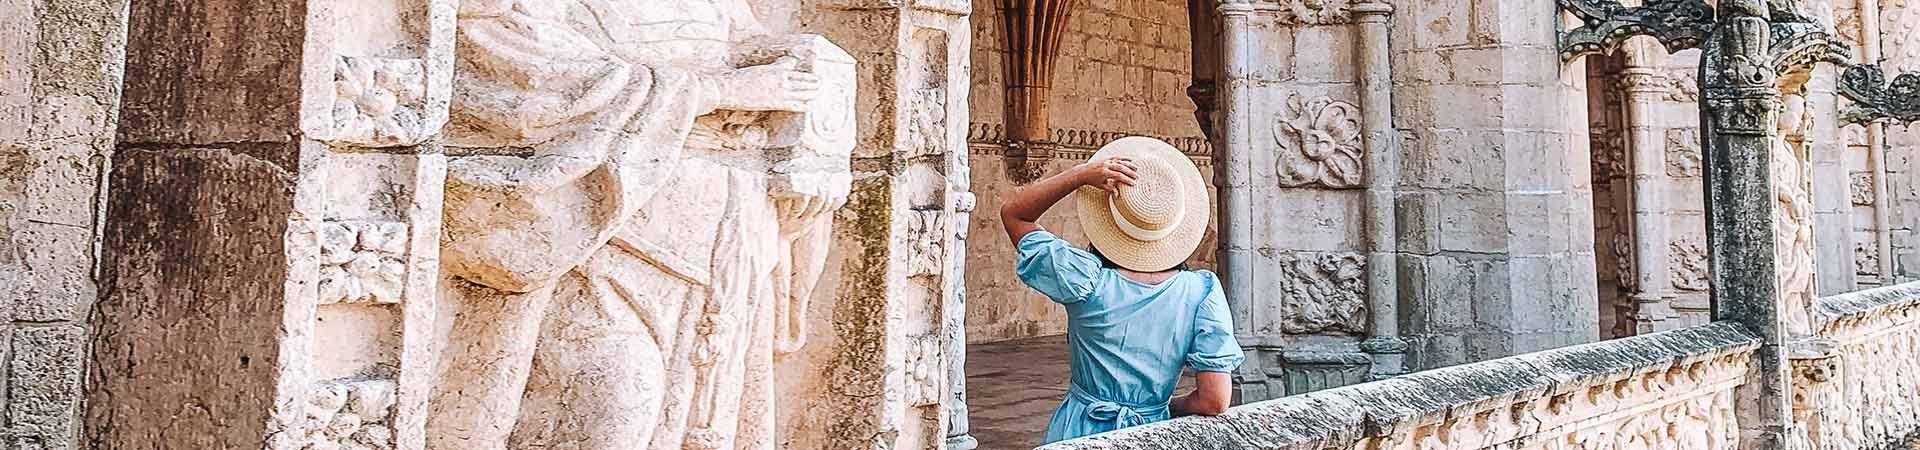 Image composée d'une dame de dos, contemplant un monument en pierre blanche. La dame a de longs cheveux noirs et porte une robe bleue et un chapeau de paille beige qu'elle tient dans sa main gauche.